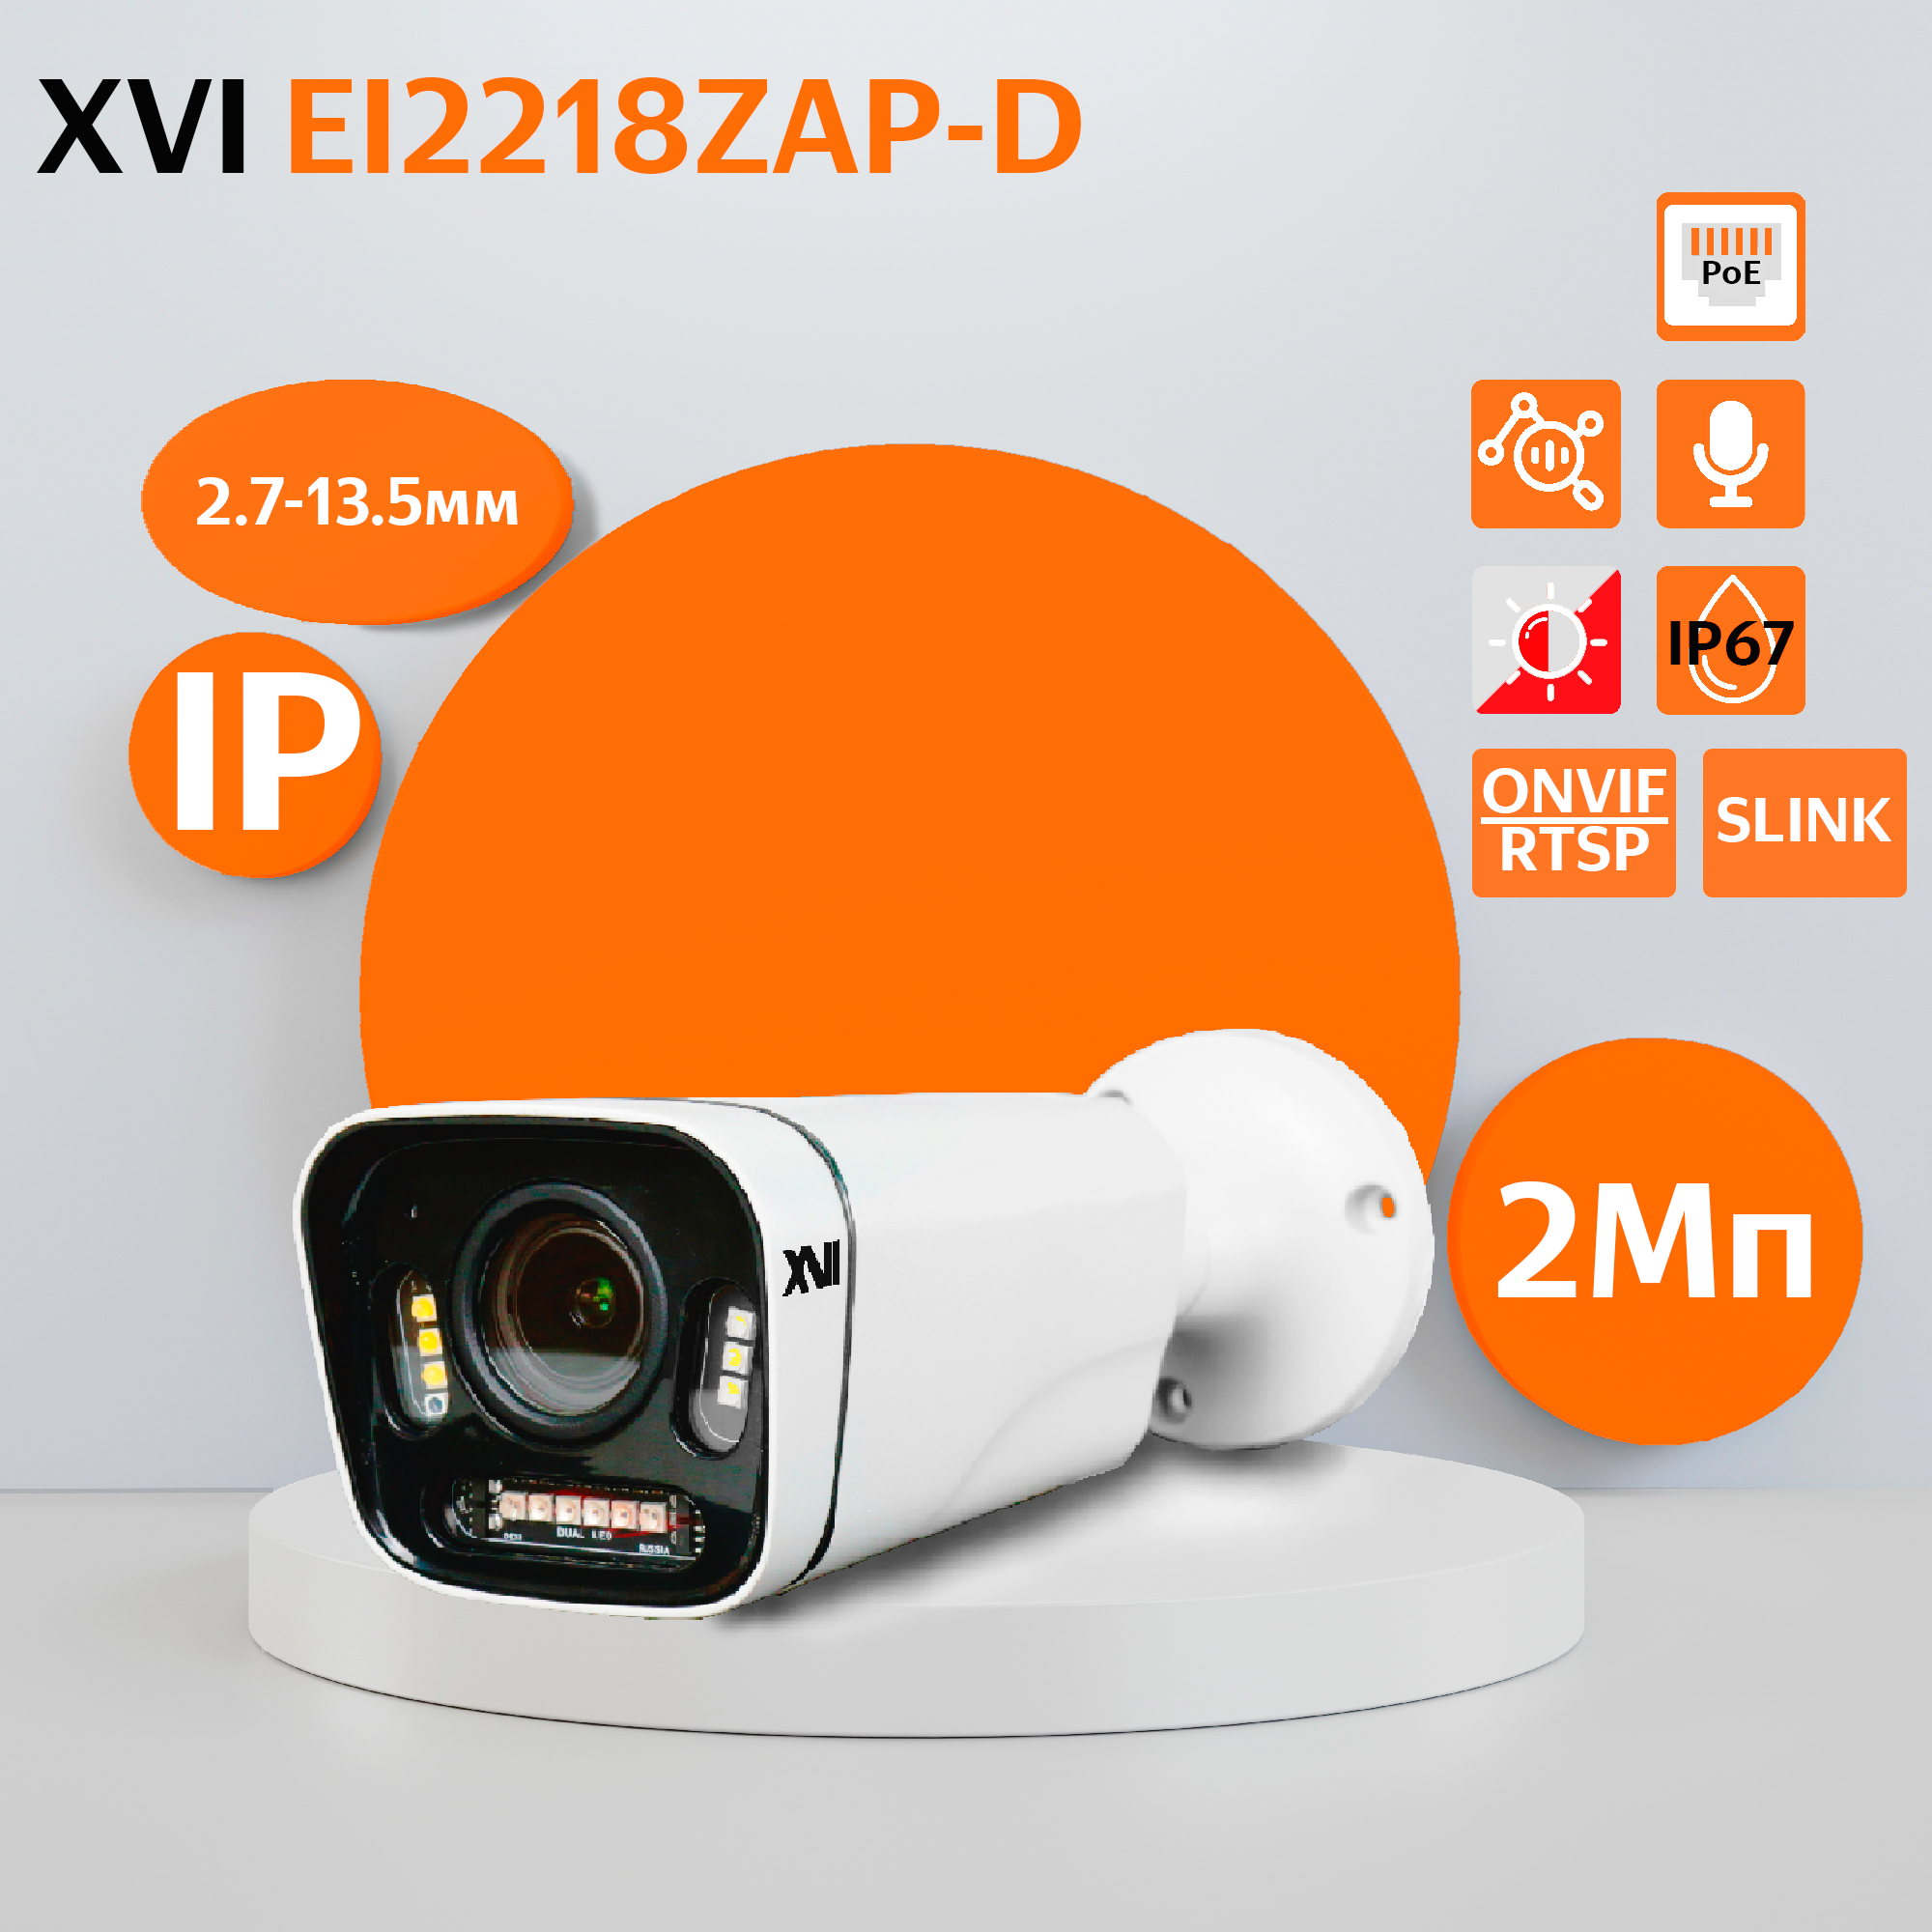 Уличная IP камера XVI EI2218ZAP-D, 2Мп, вариоф.объектив, PoE, ИК+белая, f=2.7-13.5мм уличная ловушка для насекомых экоснайпер